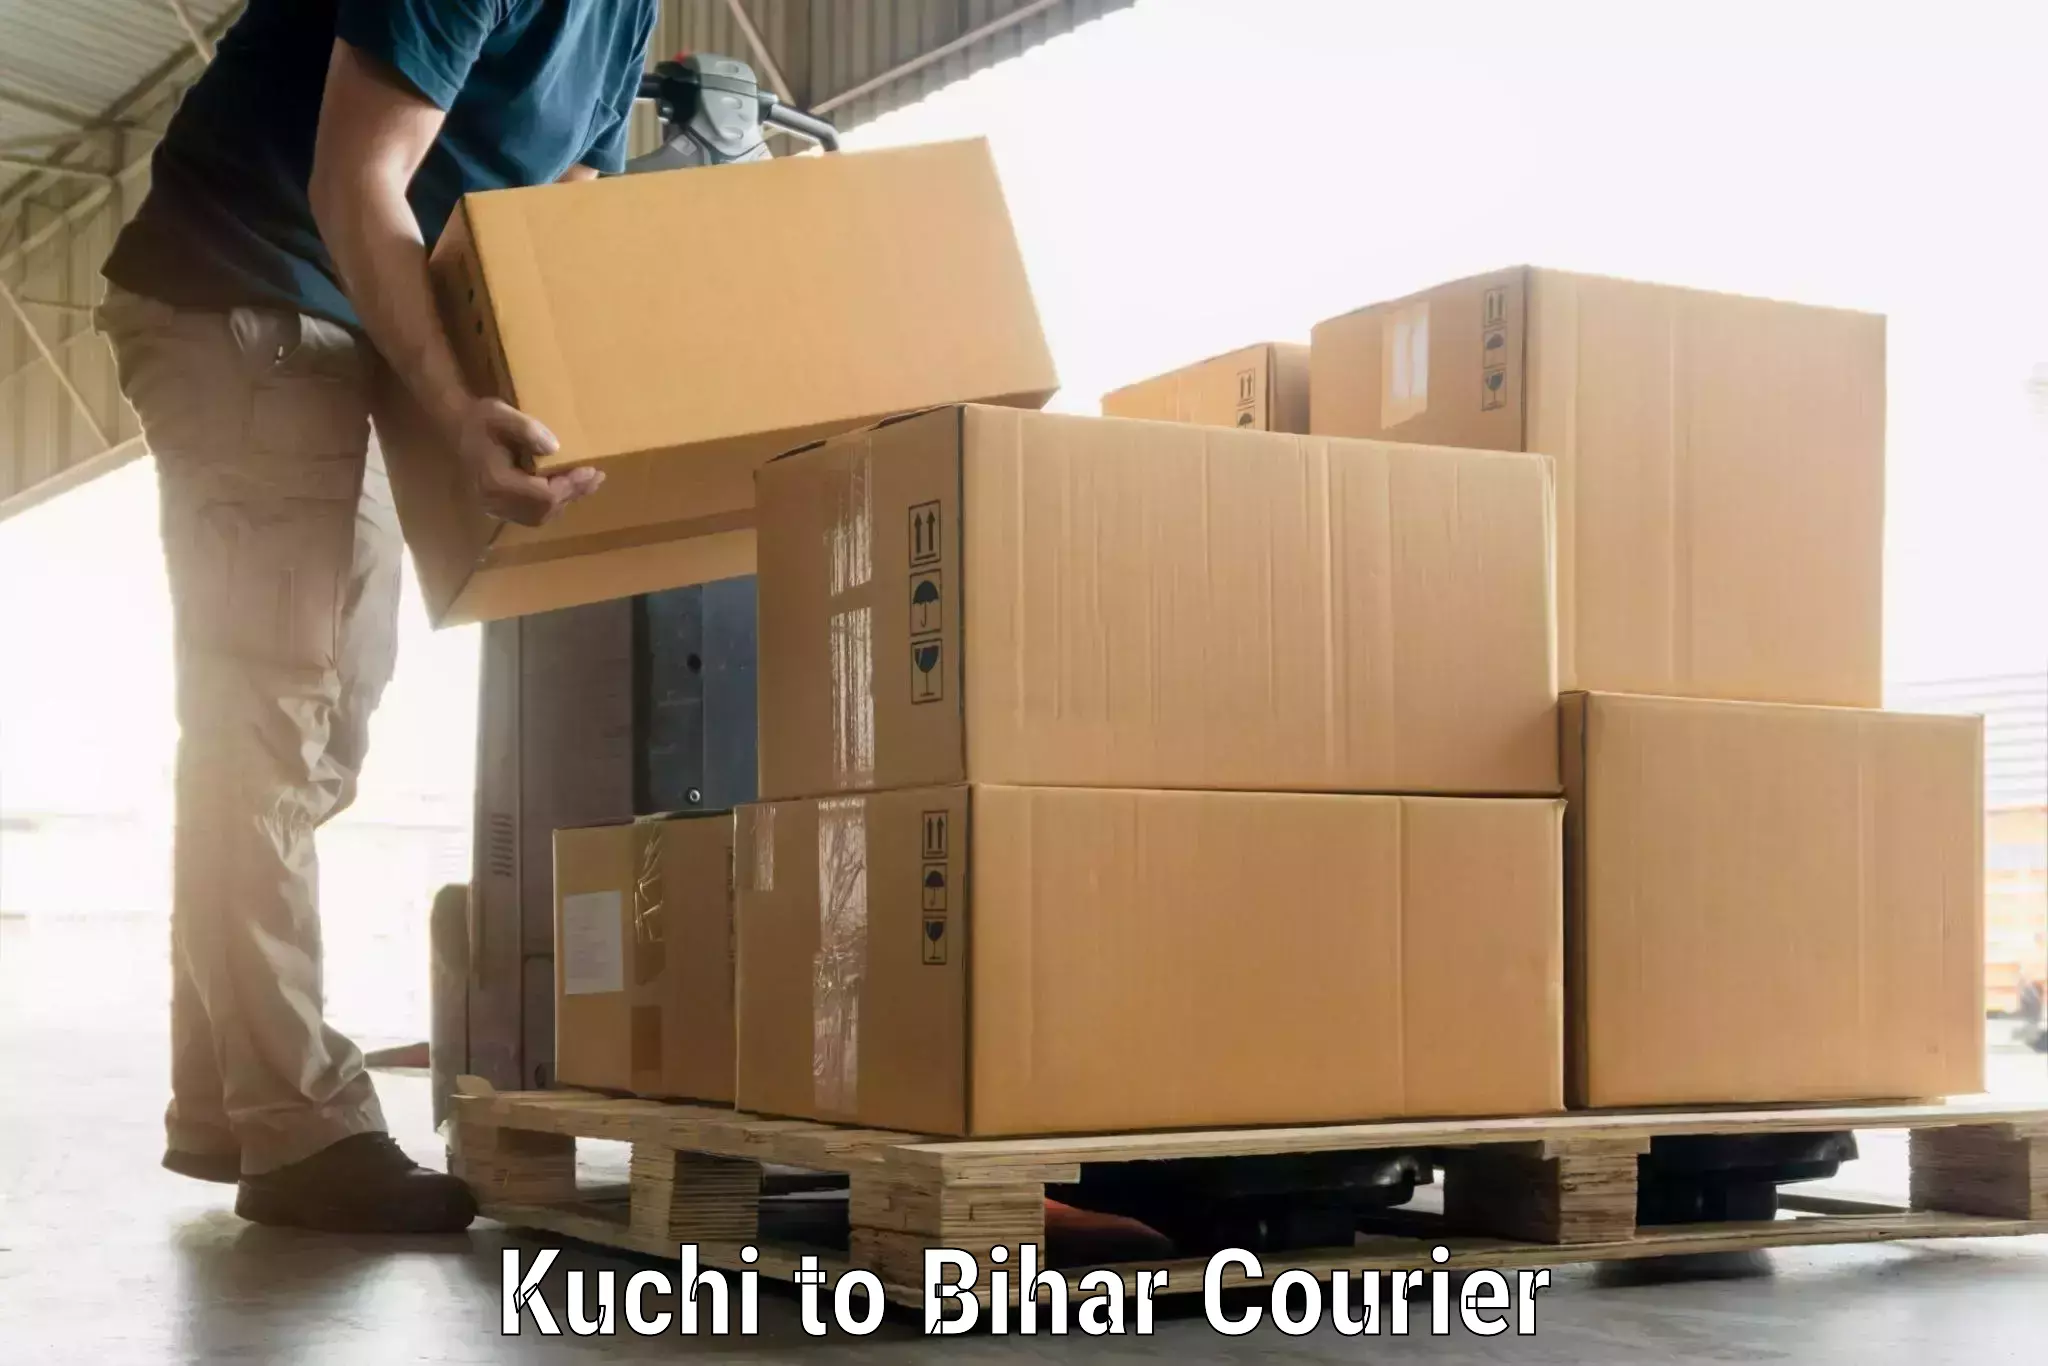 Automated luggage transport Kuchi to Bihar